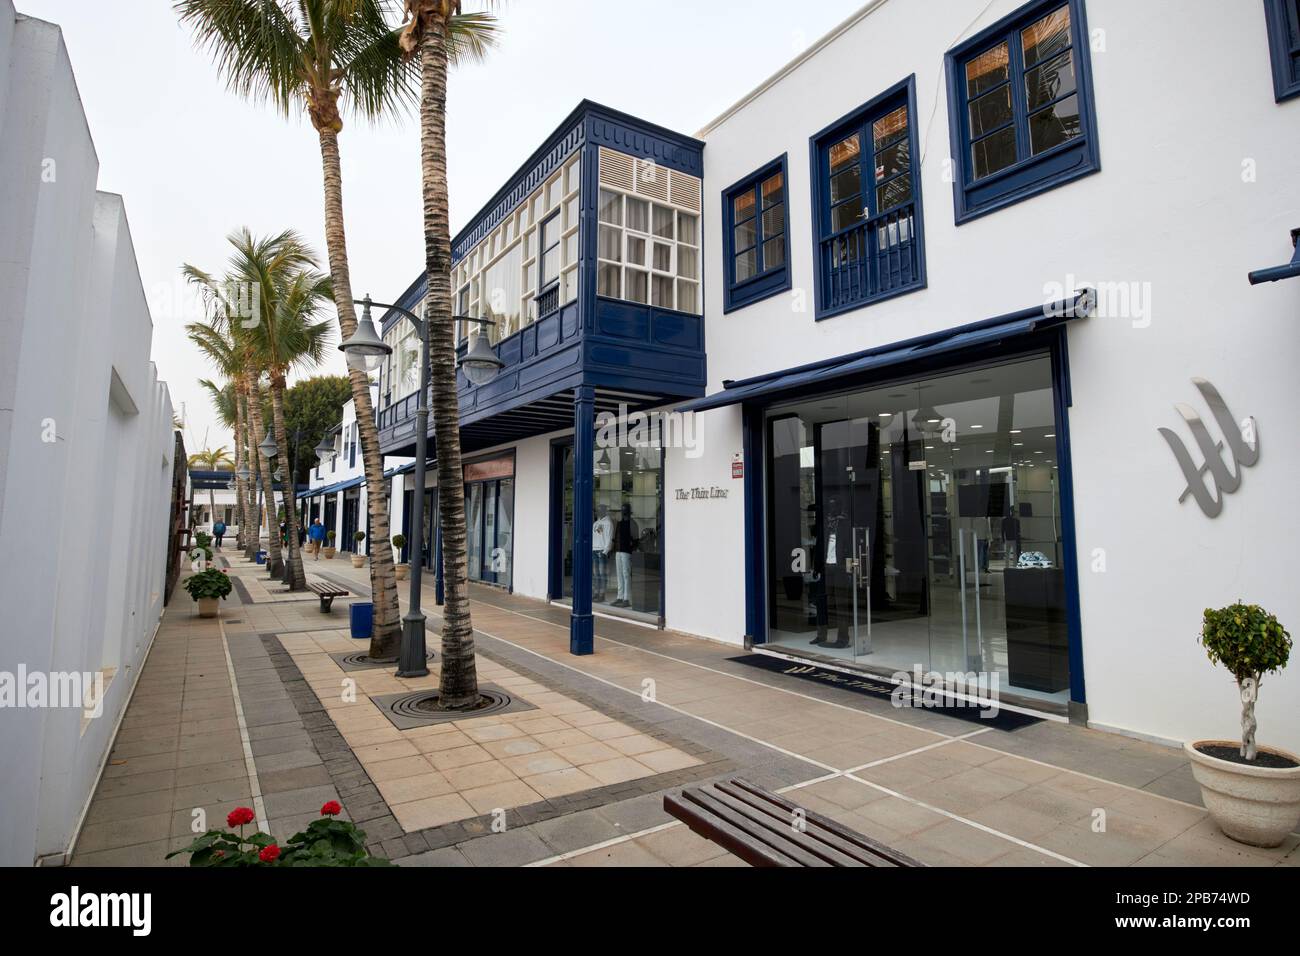 calle isla los lobos shops and cafes at puerto calero marina Lanzarote, Canary Islands, Spain Stock Photo